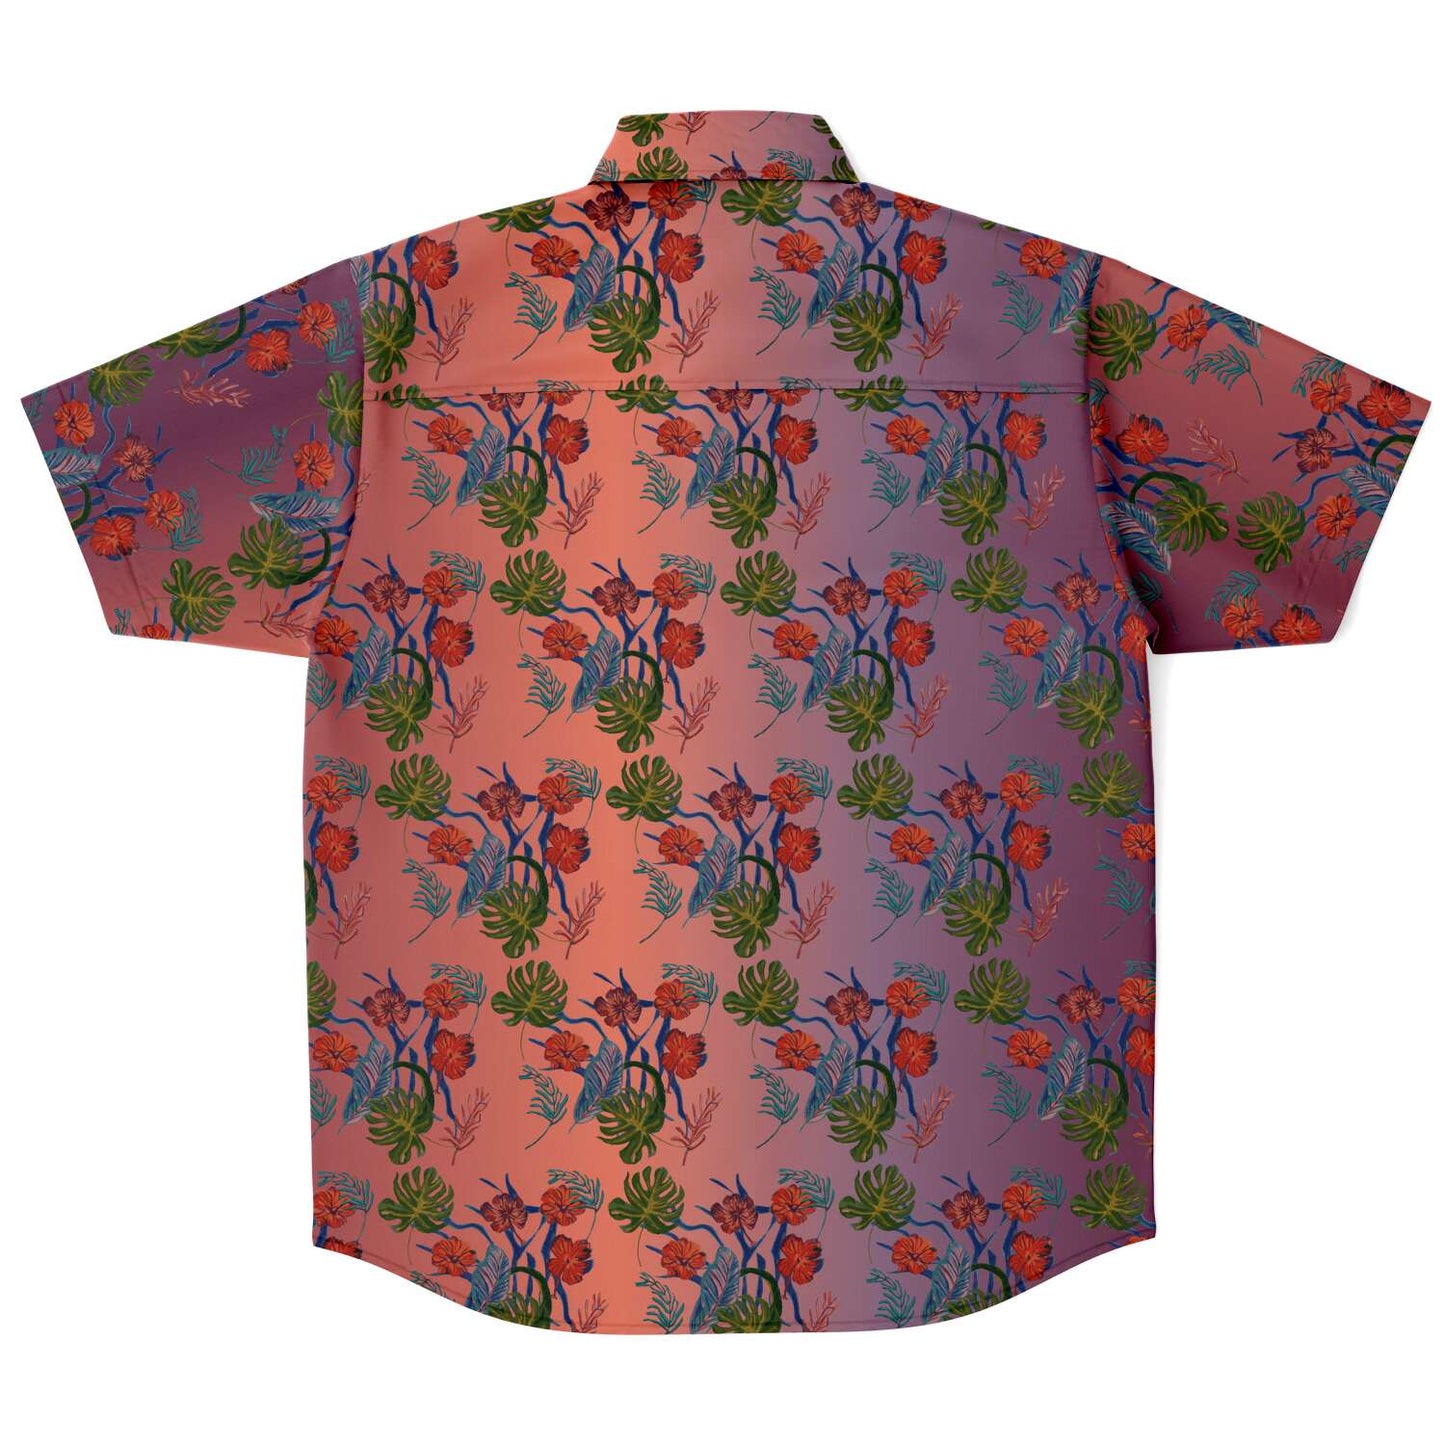 Til Dawn mens purple sky floral short sleeve shirt - HipHatter